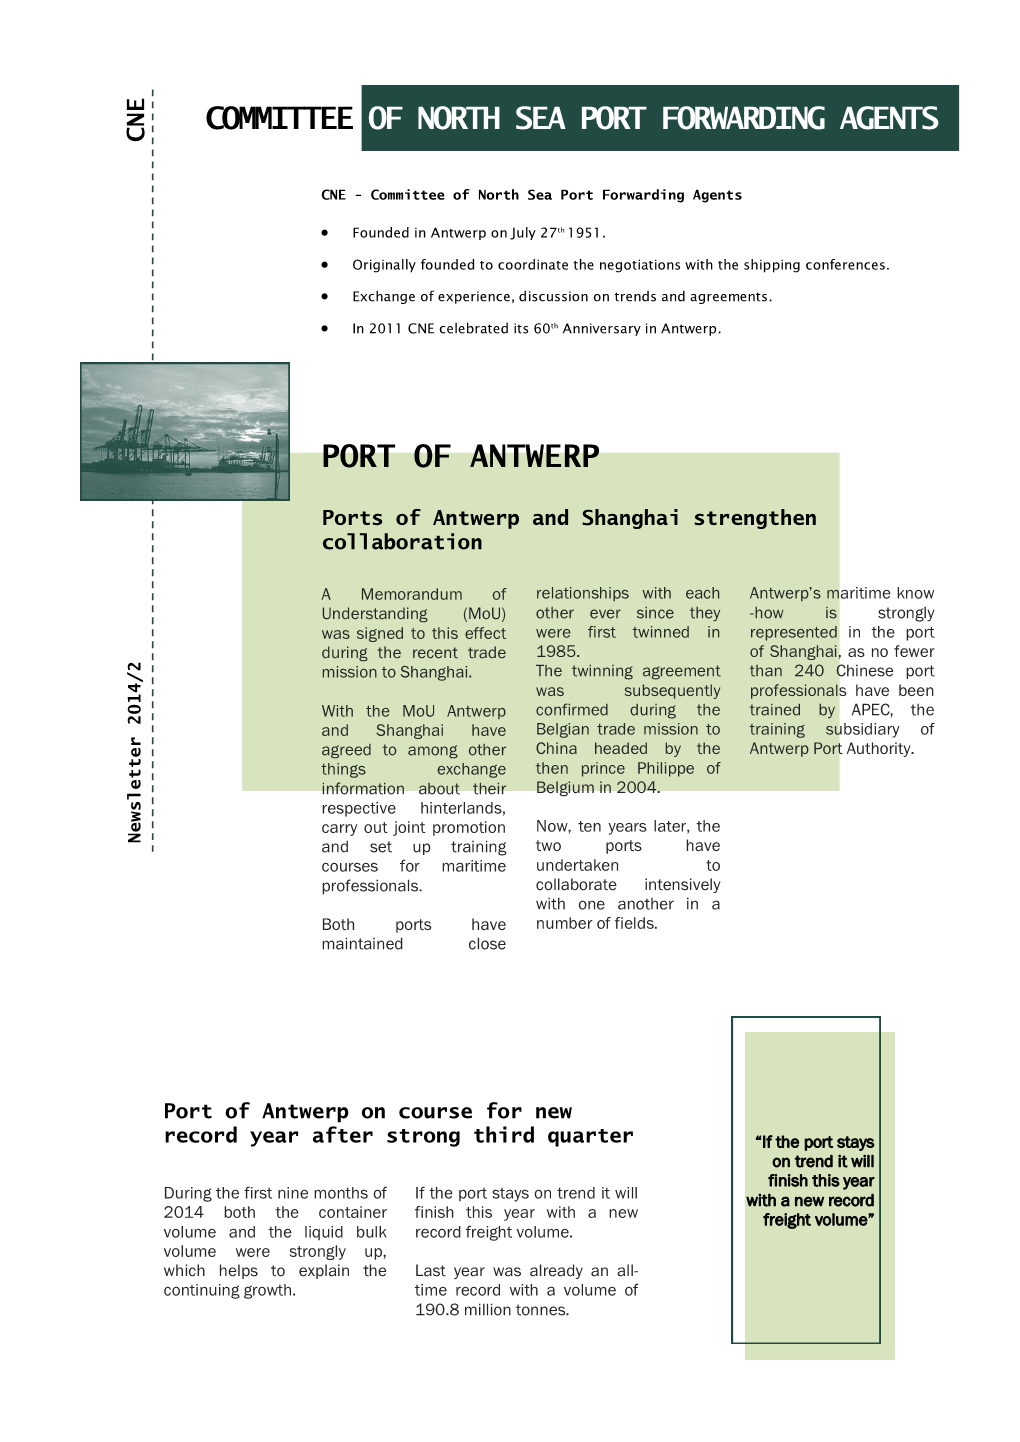 Port of Antwerp Committee of North Sea